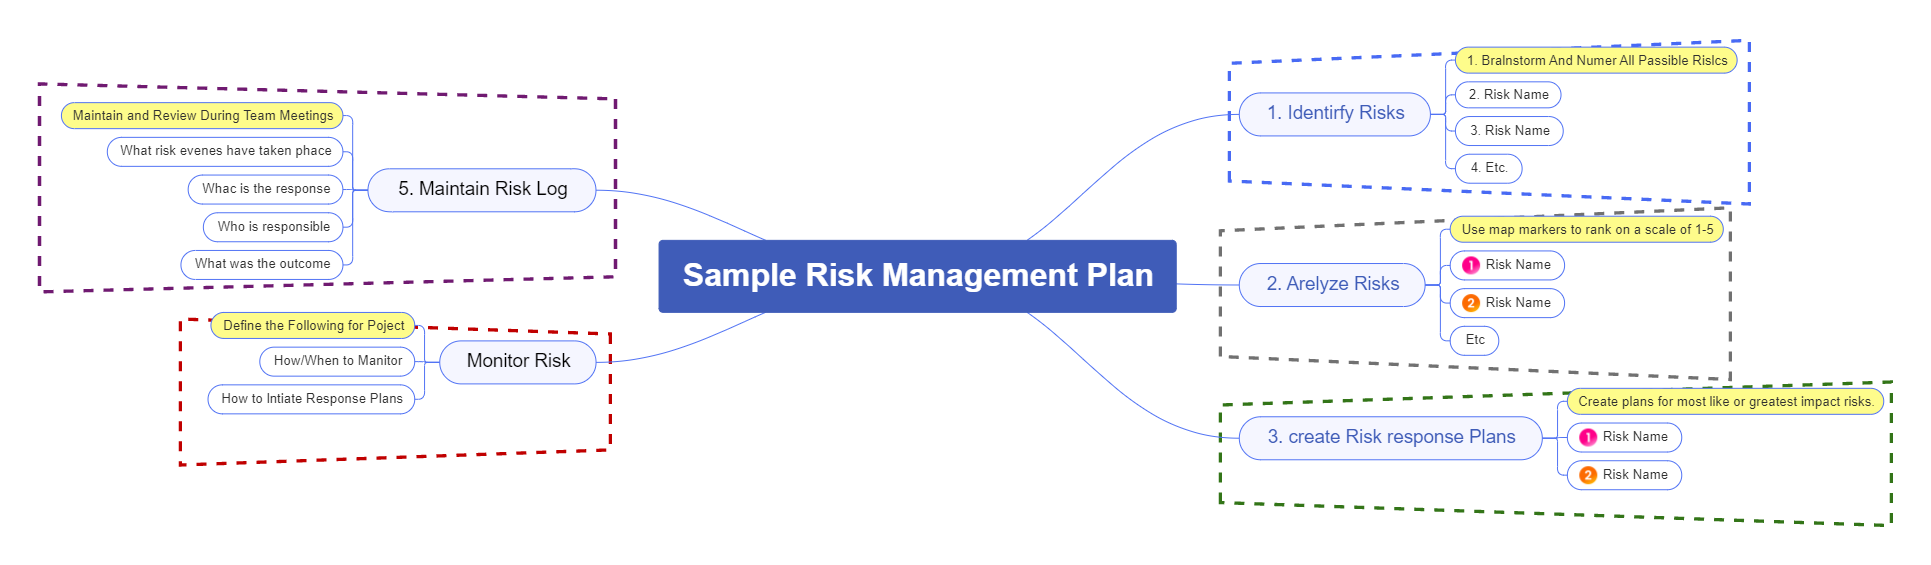 Sample Risk Management Plan Mind Map